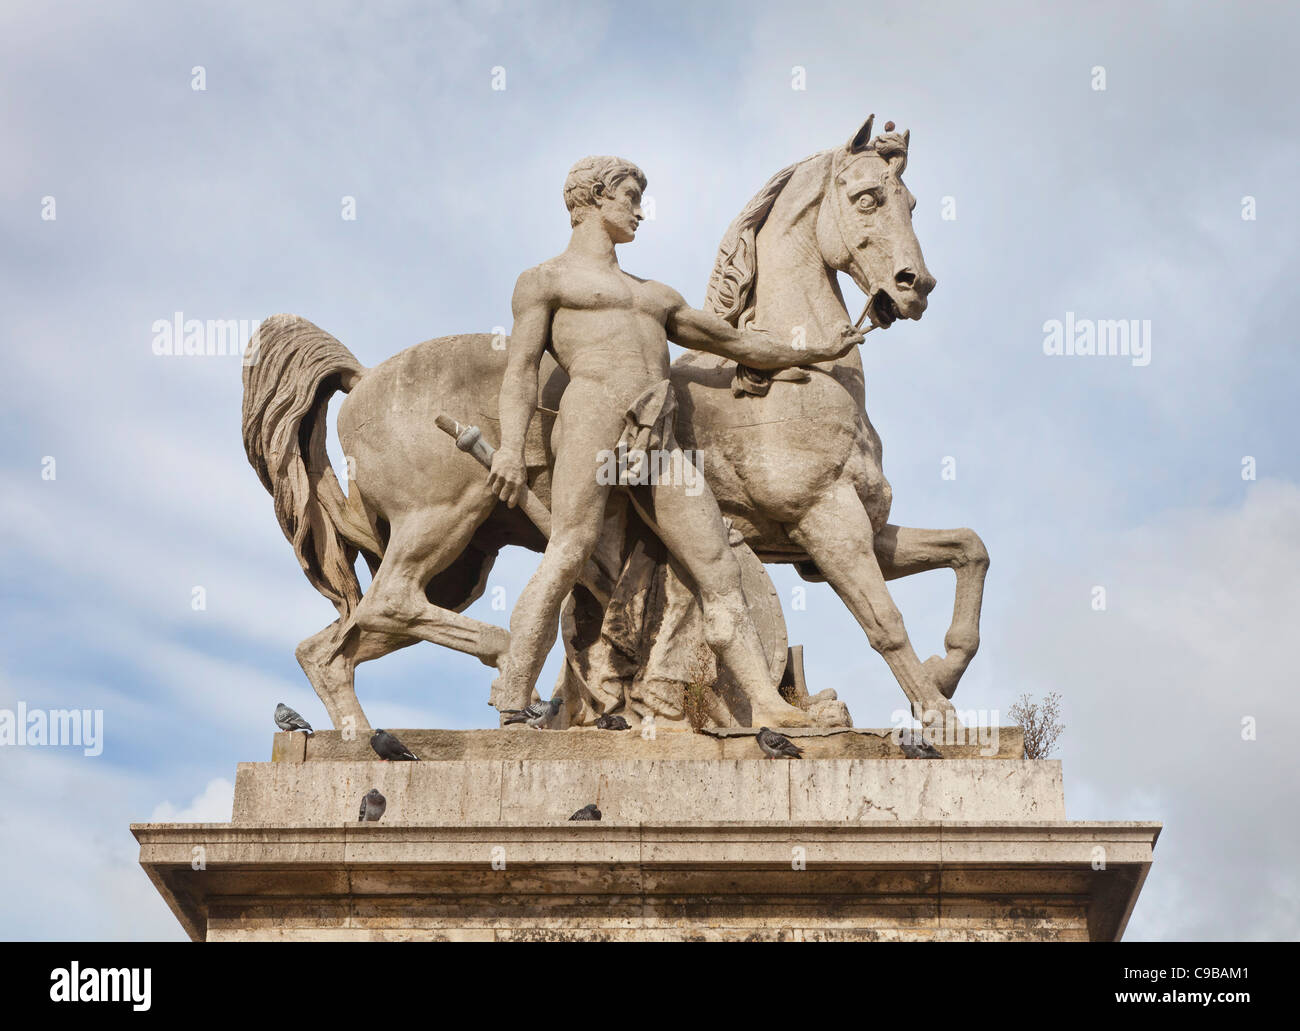 Pont d'lena bridge, Paris, France, statue of a warrior with horse Stock Photo